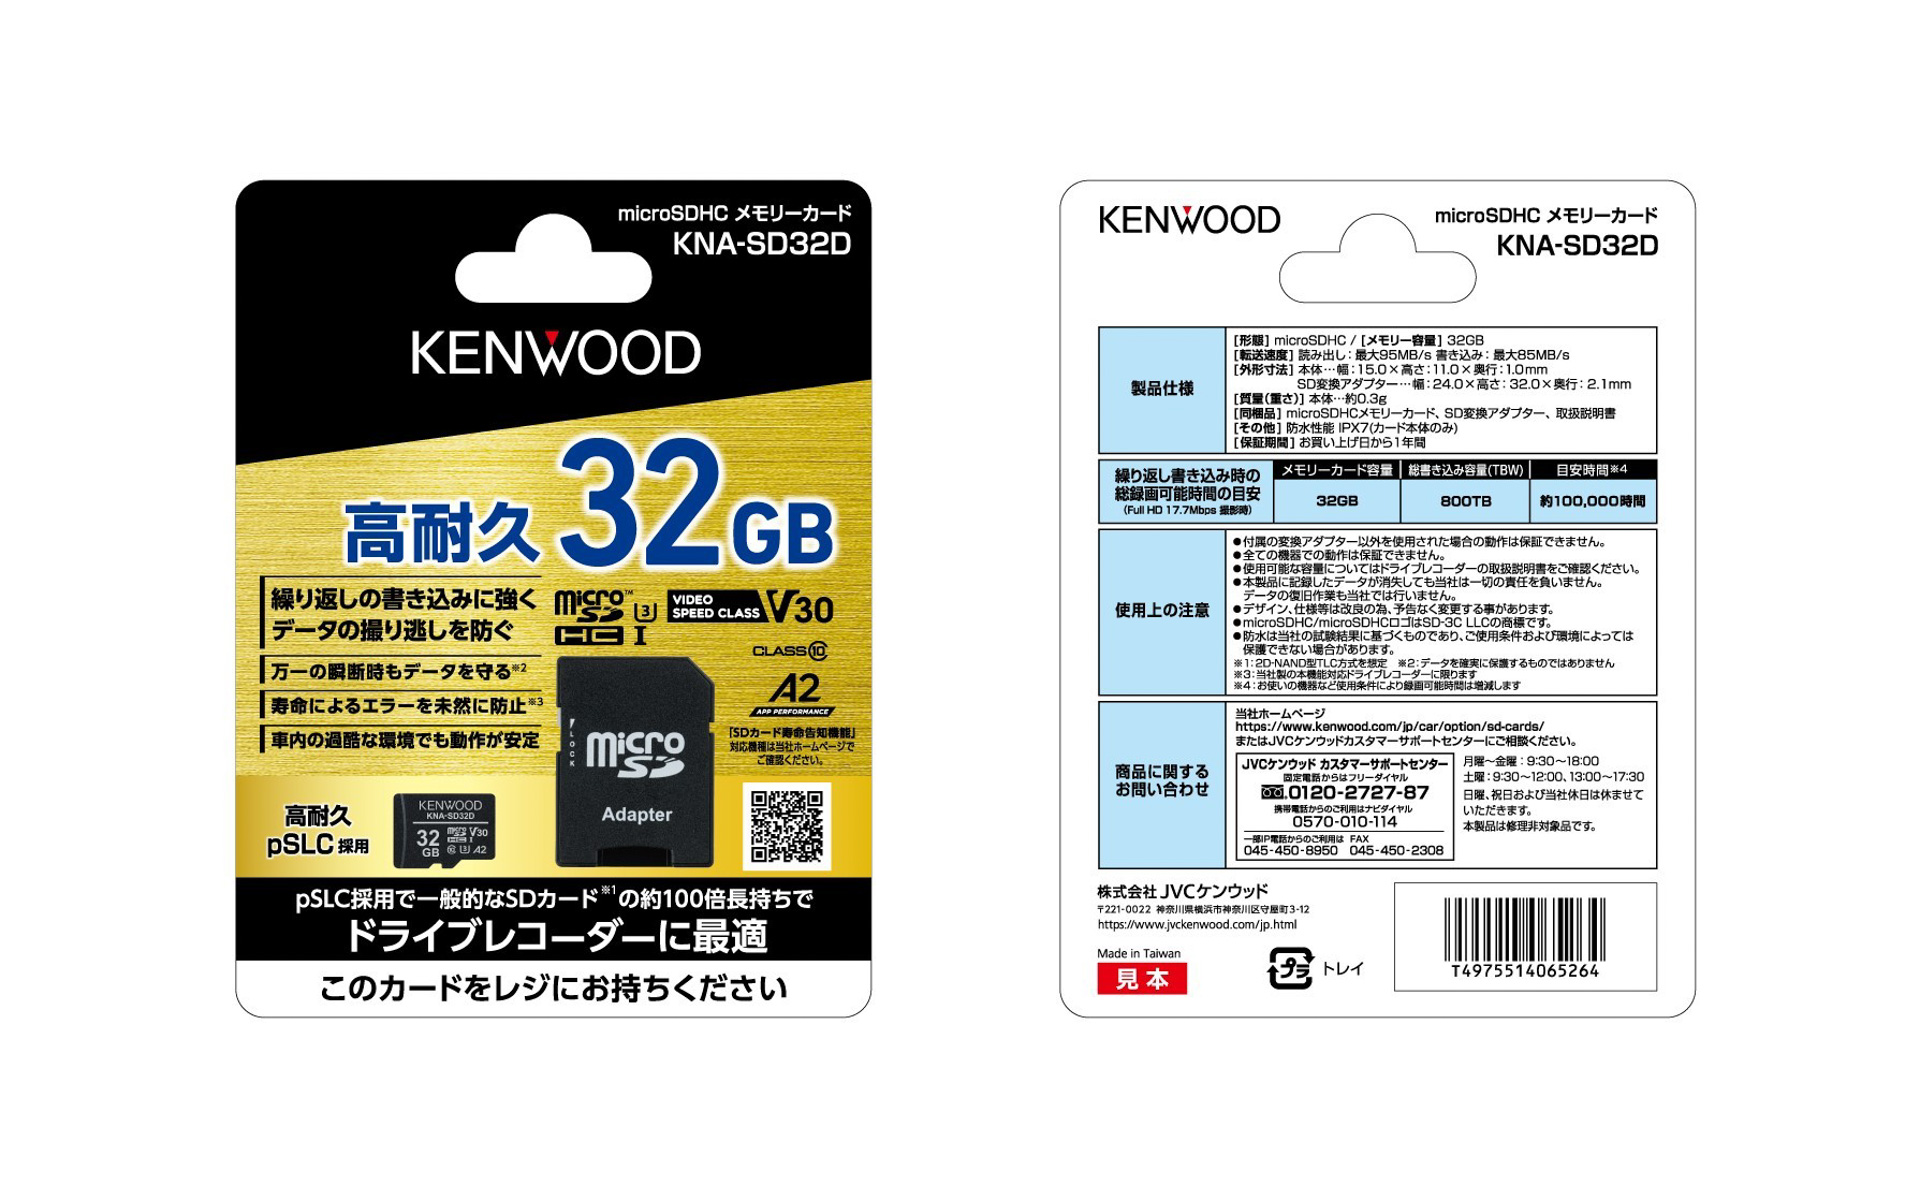 ケンウッド、3D NAND型フラッシュメモリー採用のSDカード「KNA-SD32D」「KNA-SD1280D」「KNA-SD640D」3モデル発売 -  Car Watch